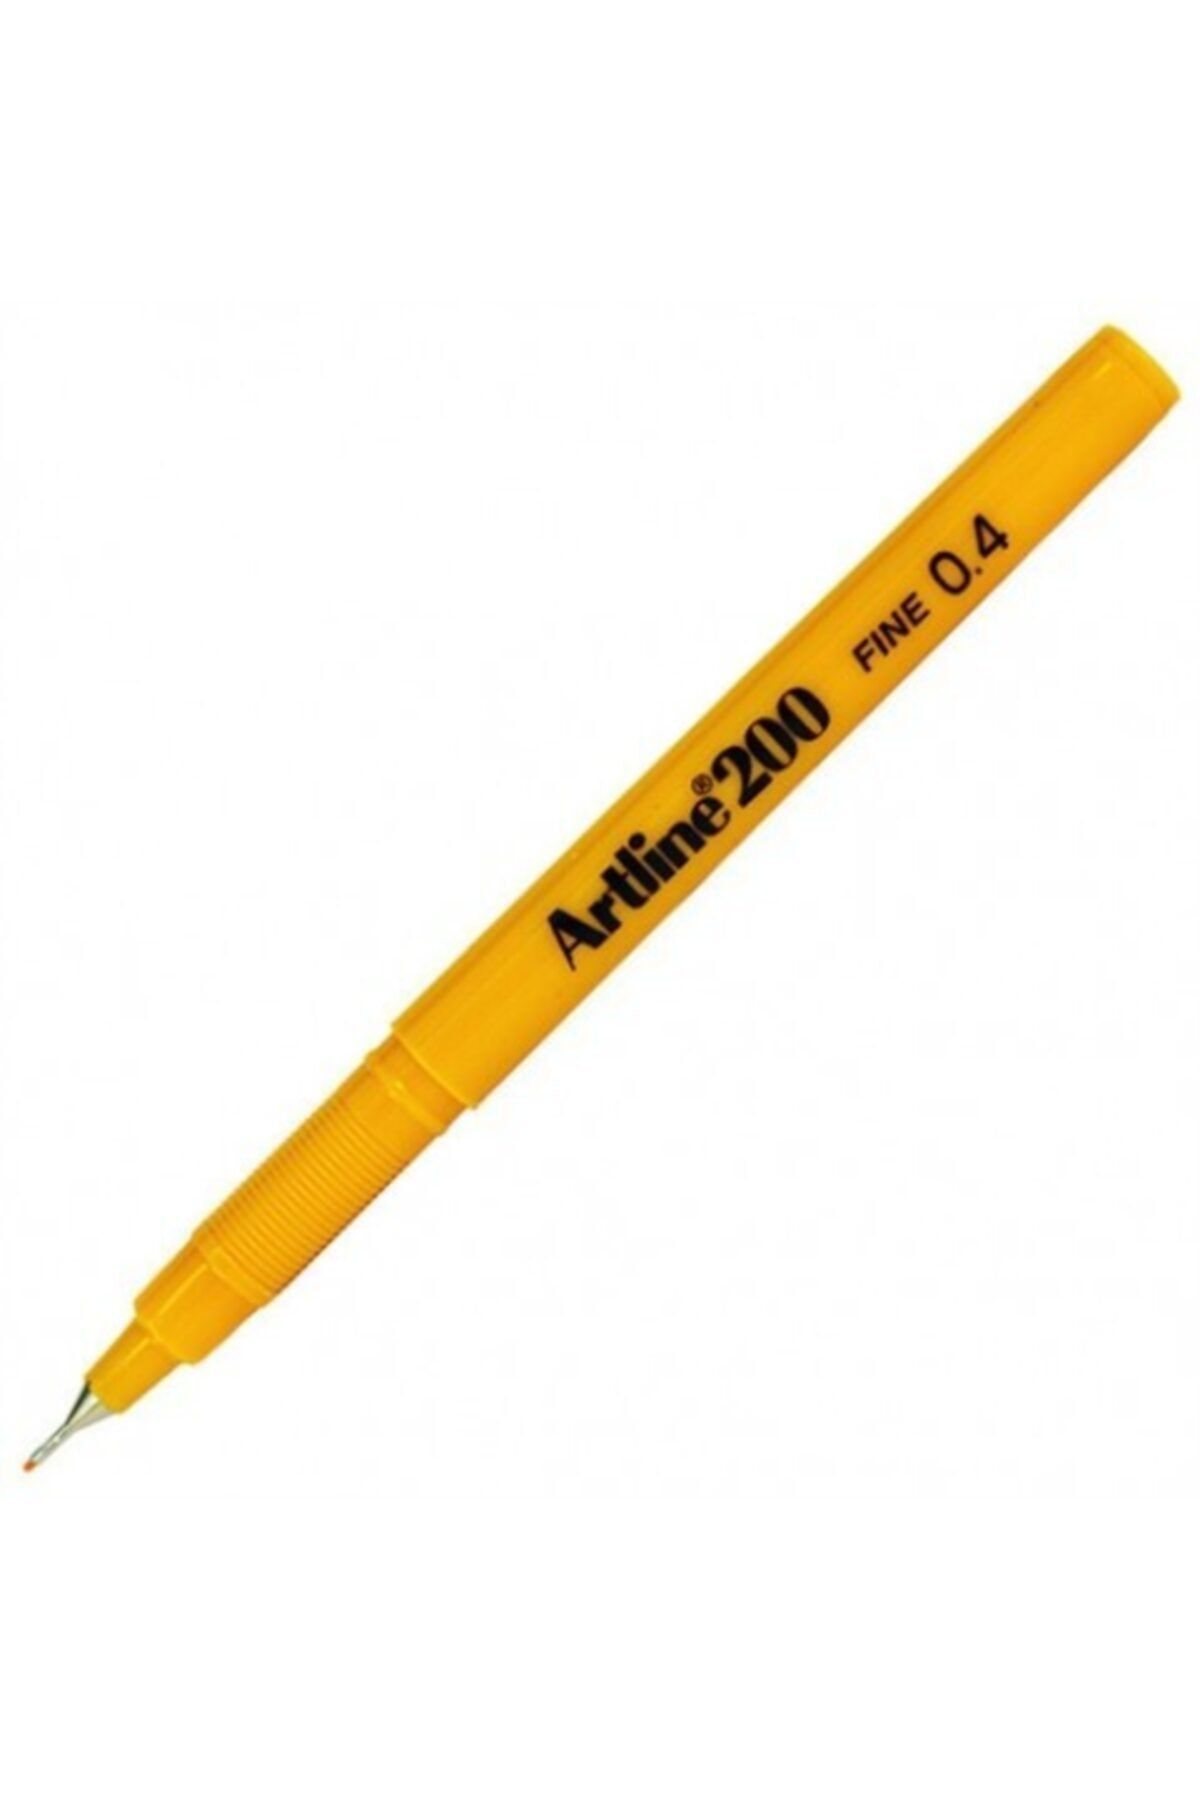 artline Artlıne Yazı Kalemi Kromatıc Sarı Ek-200cc